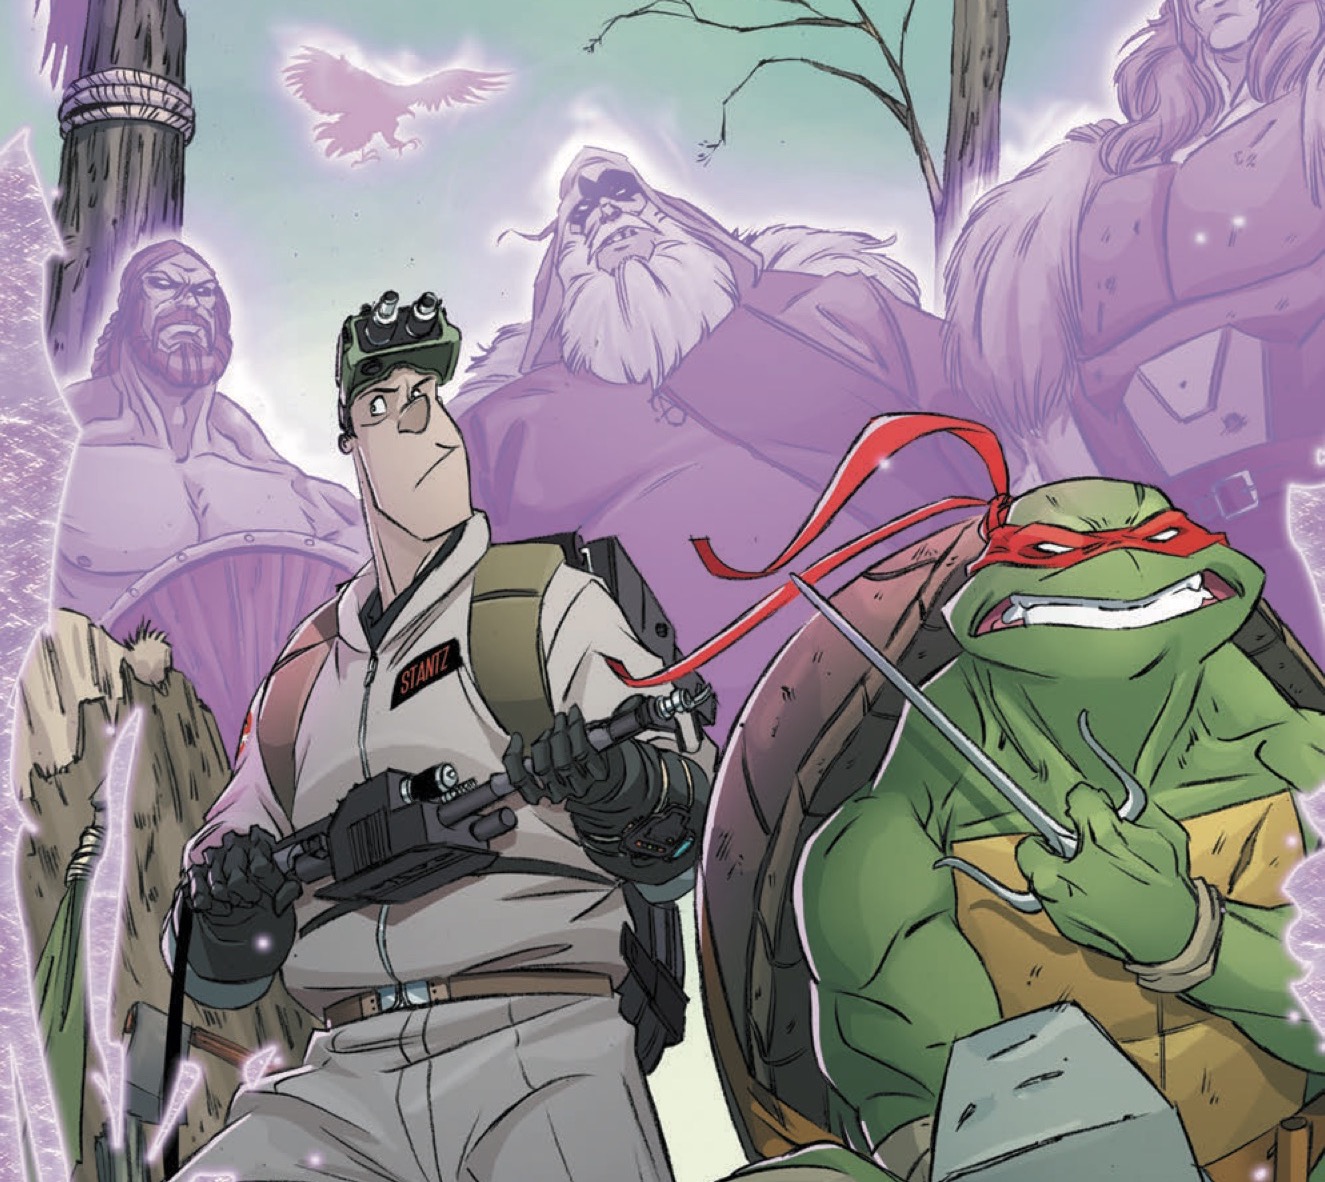 [EXCLUSIVE] IDW Preview: Teenage Mutant Ninja Turtles/Ghostbusters II #3